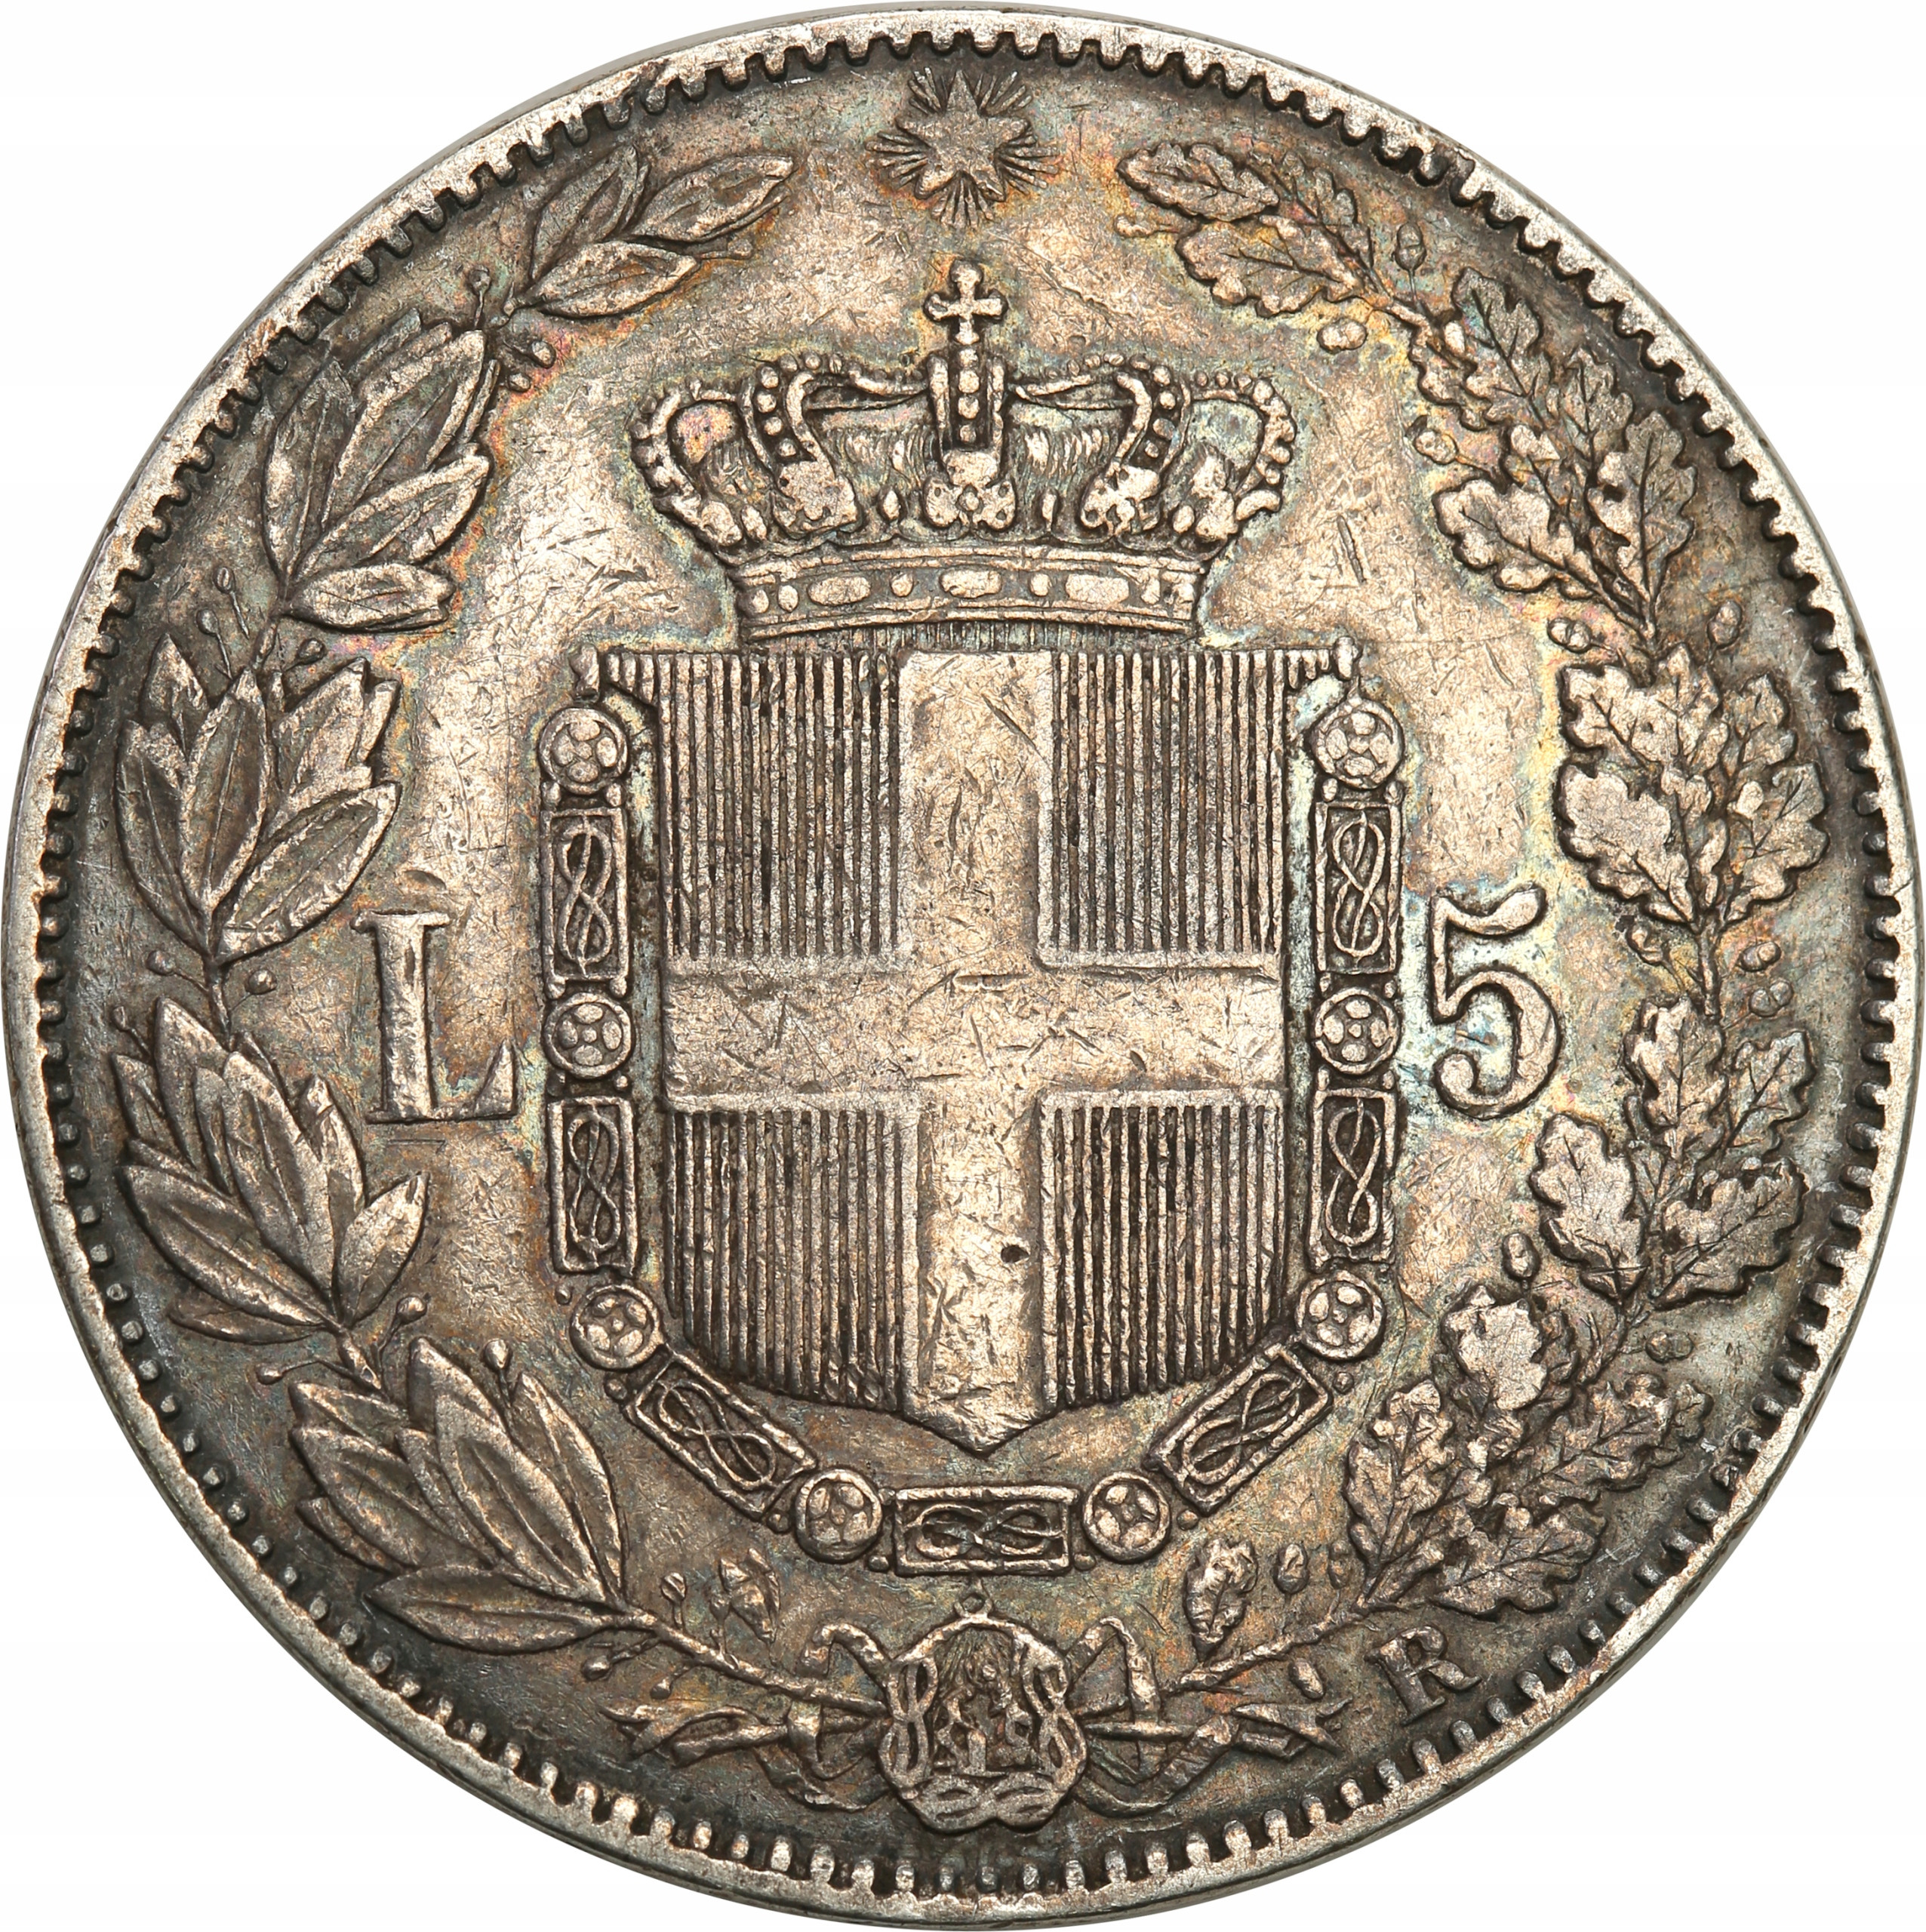 Włochy. Umberto I 5 lirów 1879 - RZADKIE